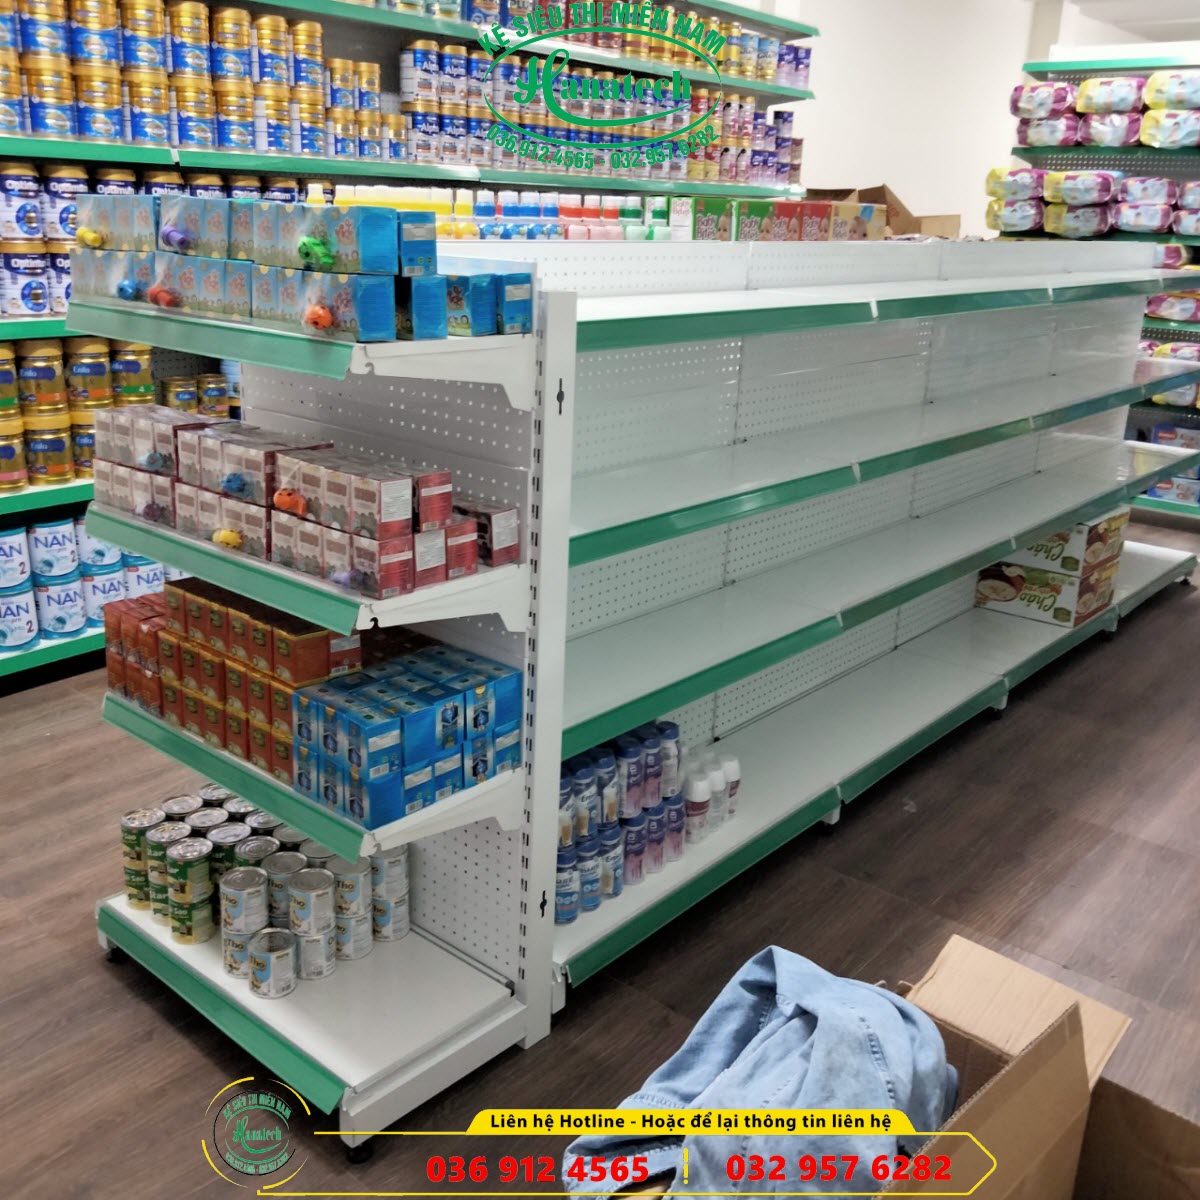 Giá kệ siêu thị trưng bày sản phẩm bán hàng tại Nha Trang - Khánh Hòa